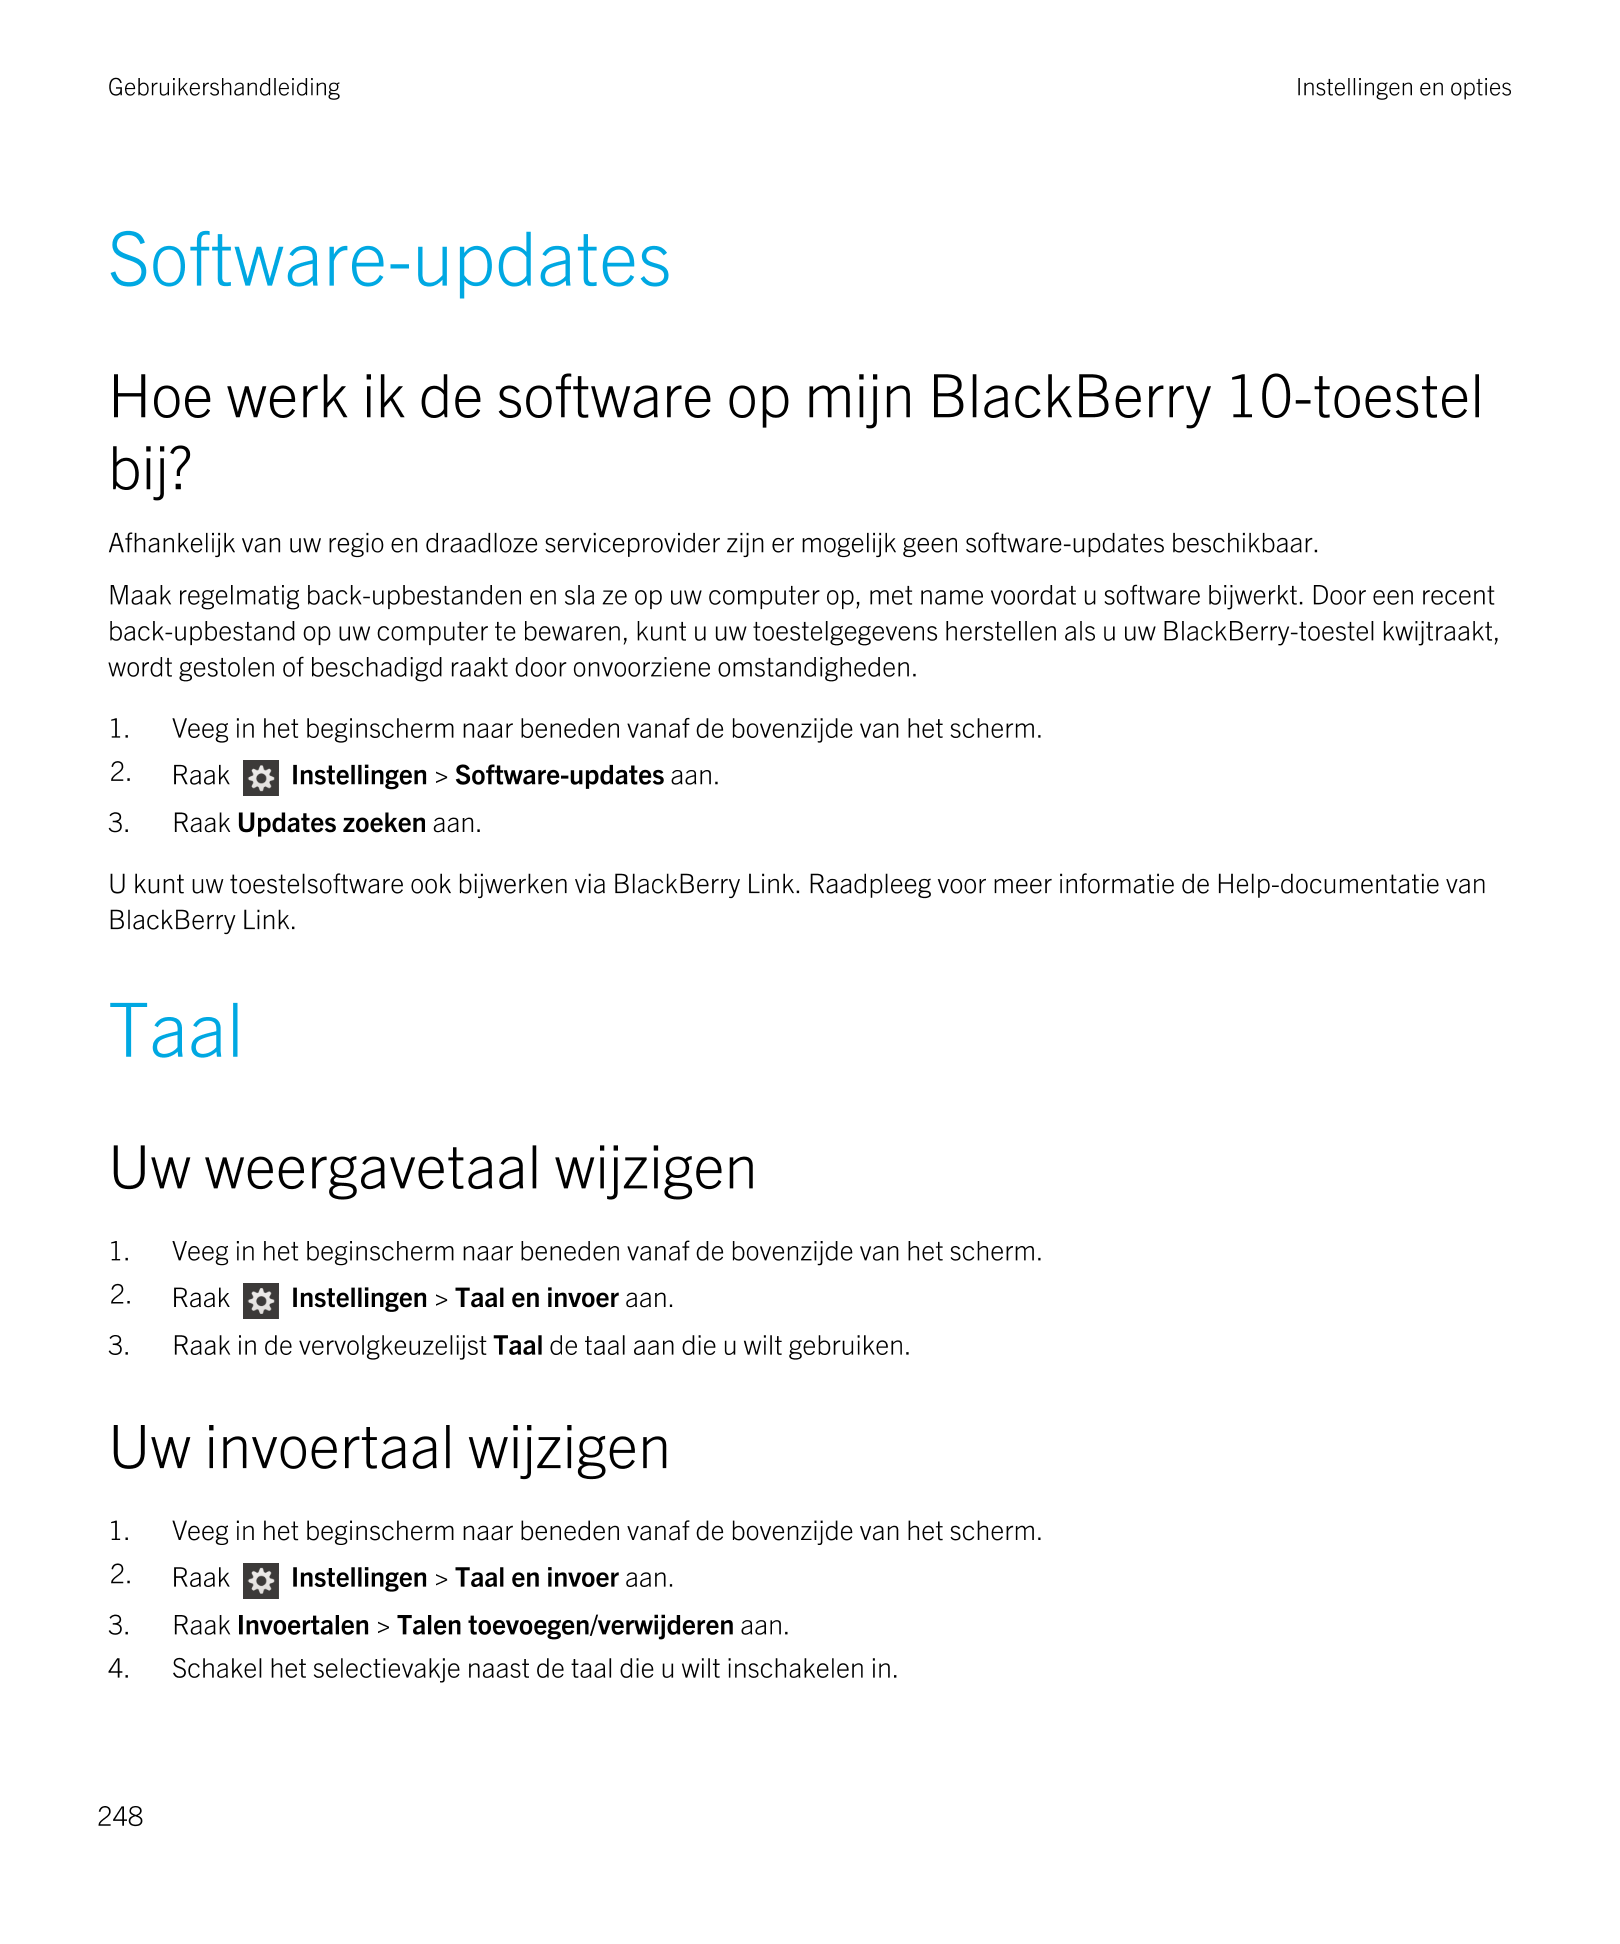 Gebruikershandleiding Instellingen en opties
Software-updates
Hoe werk ik de software op mijn  BlackBerry 10-toestel 
bij?
Afhan